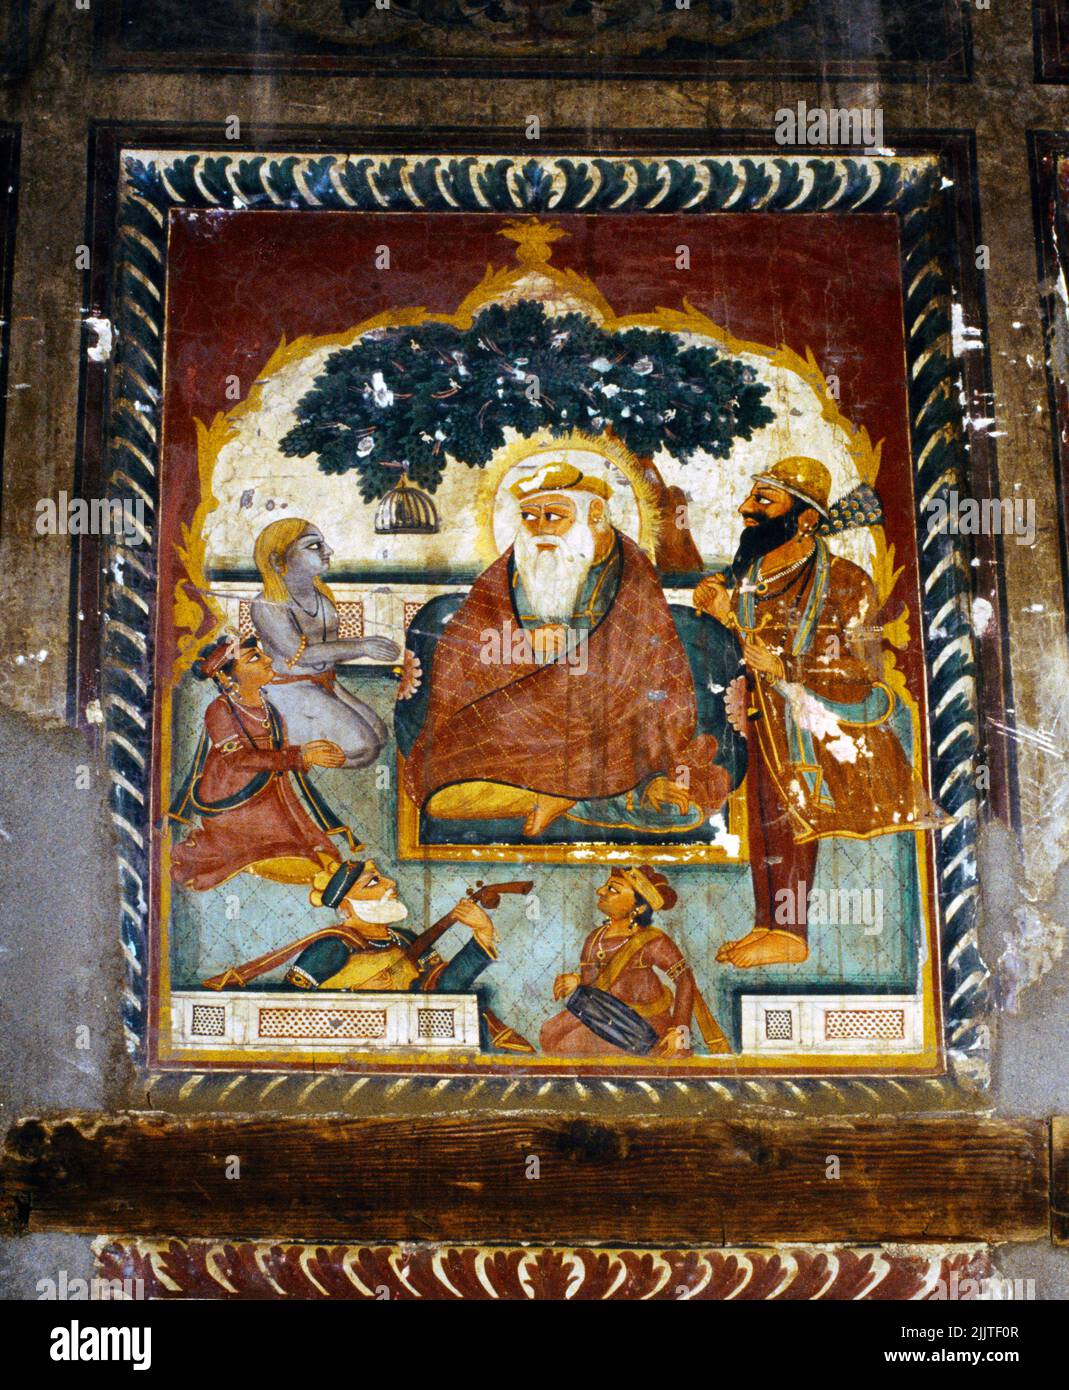 Amritsar India Sikh Fresco en almacén del té mostrando a Guru Nanak con el Hijo arriba a la izquierda con el musulmán Mardana jugando Rebab abajo a la izquierda y el Hindu Bala Foto de stock